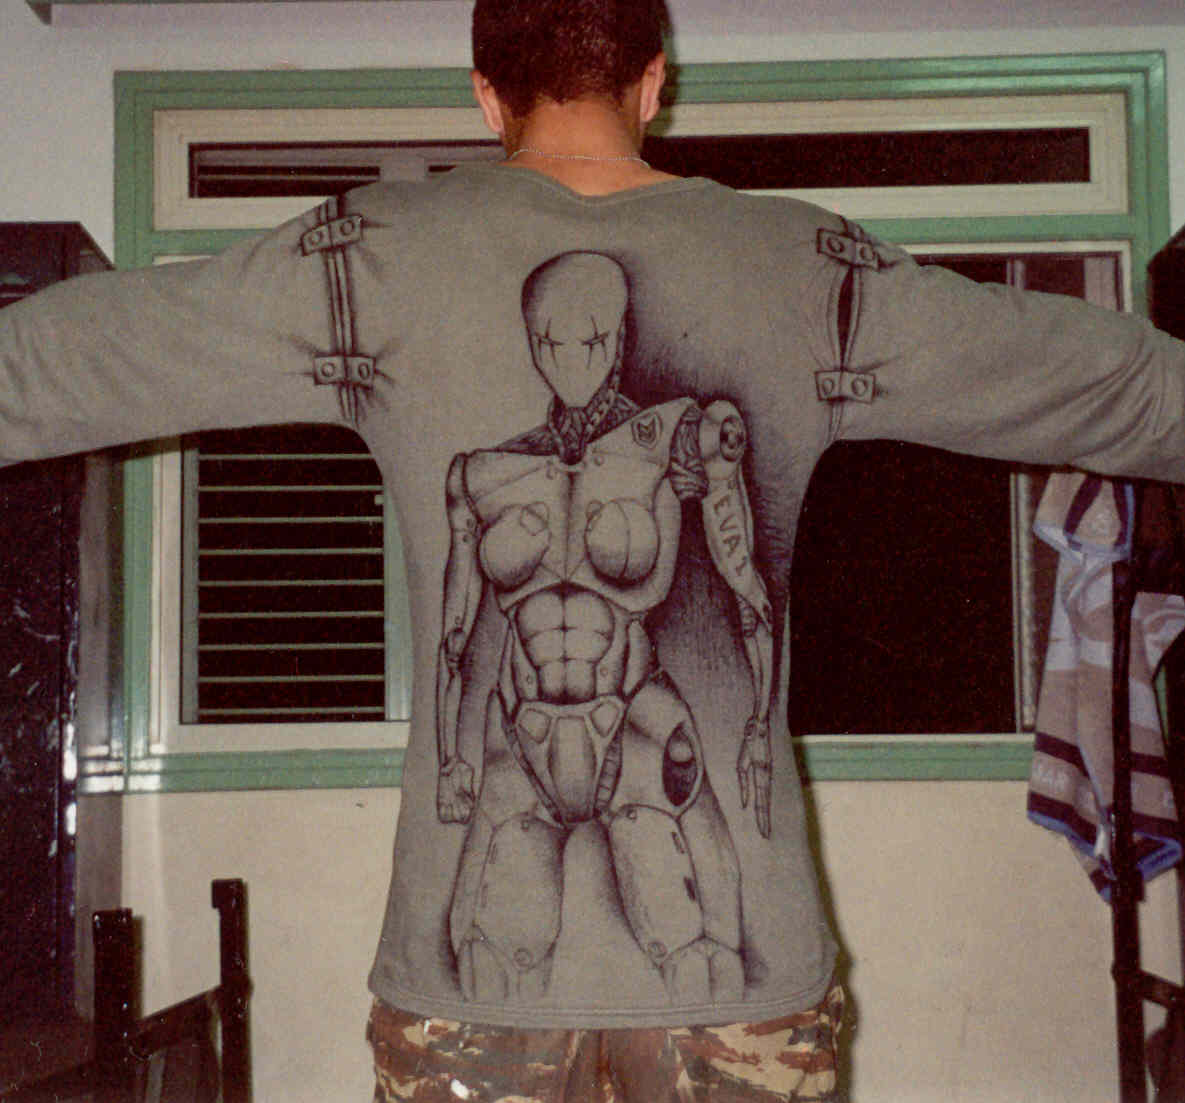 cyborg original art on shirt